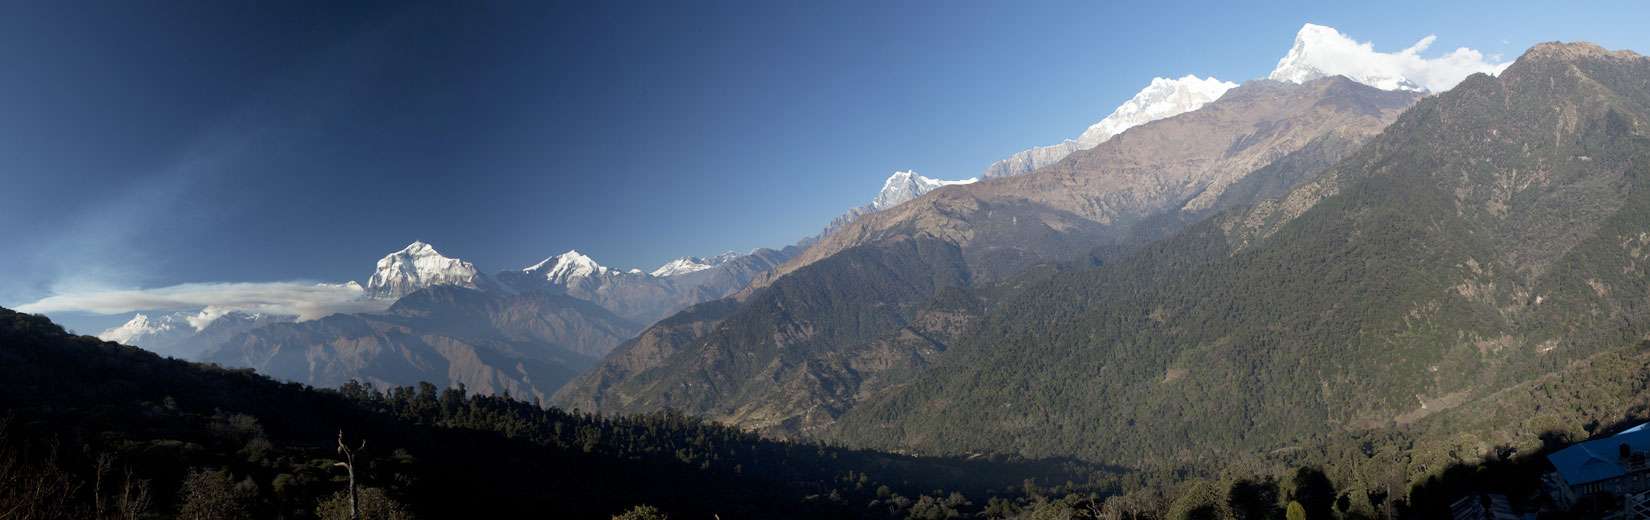 5 Best Family Treks in Nepal